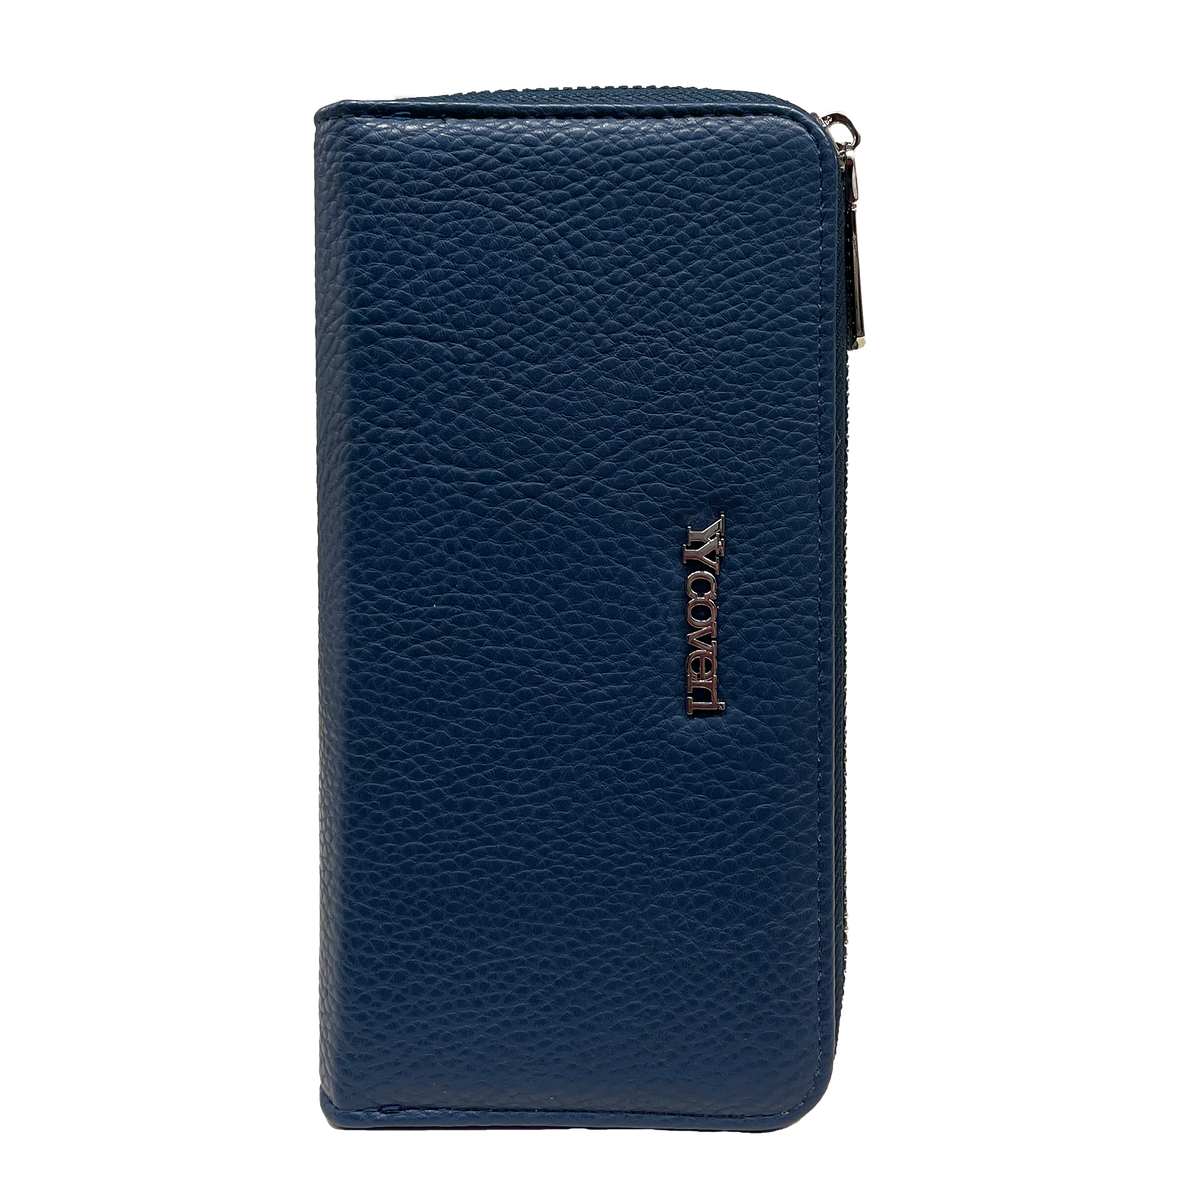 Bolsa de Carteira Azul Premium You yuang Coveri com Múltiplos Compartimentos - Seguro e Elegante